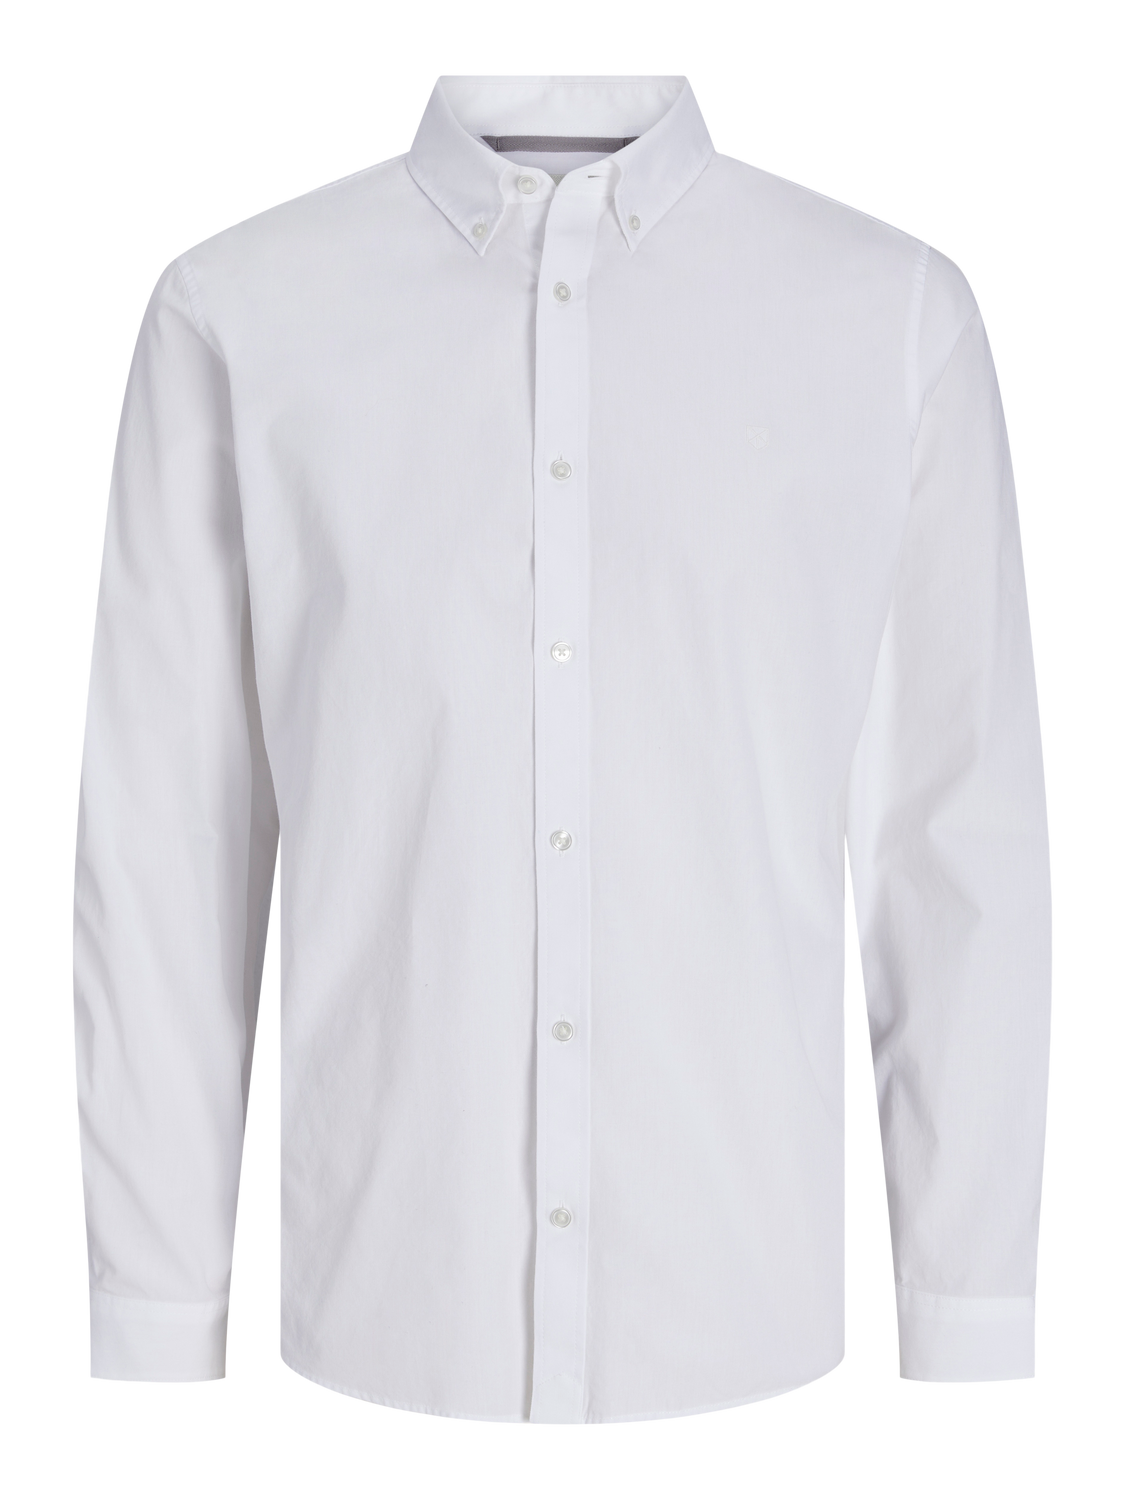 JPRCCPOPLIN Shirts - Bright White